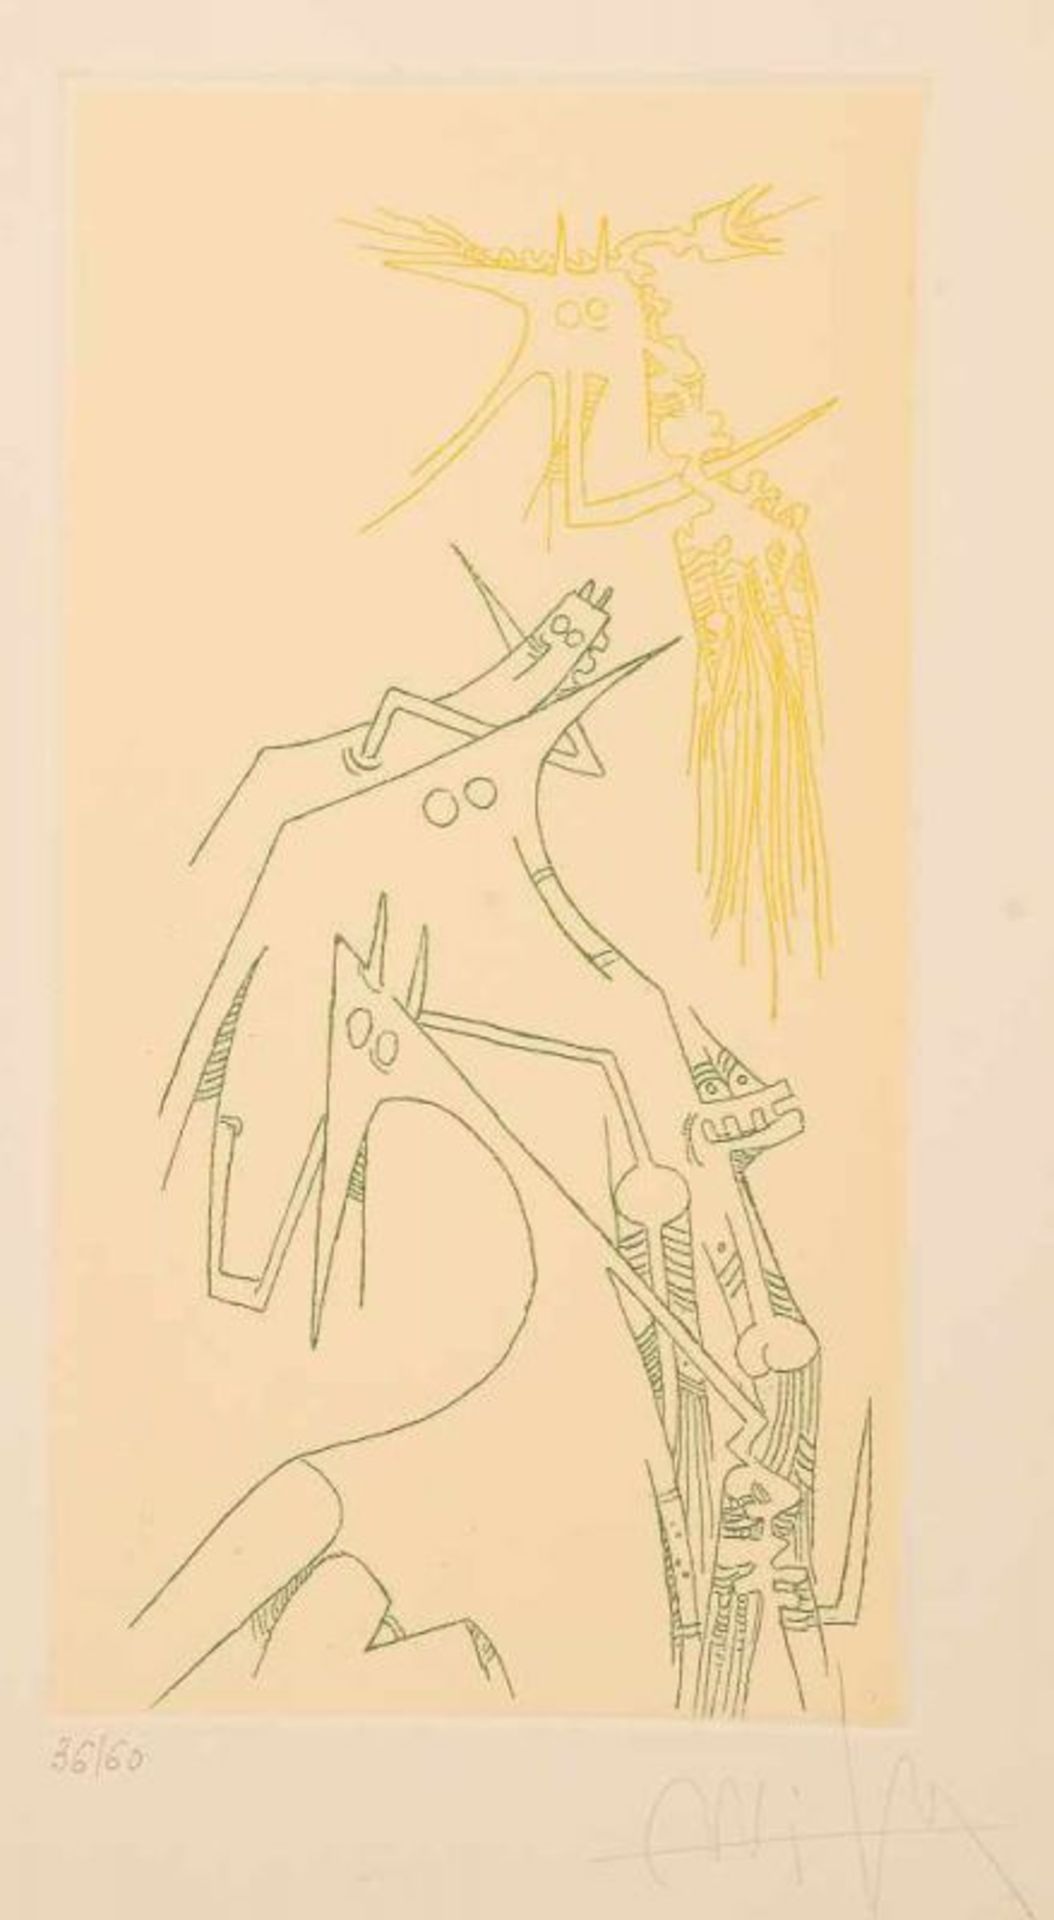 WILFREDO LAM (Cuba, 1902 -París, 1982)"Composición Surrealista"Grabado/Papelfirmado: Wilfredo Lam. A